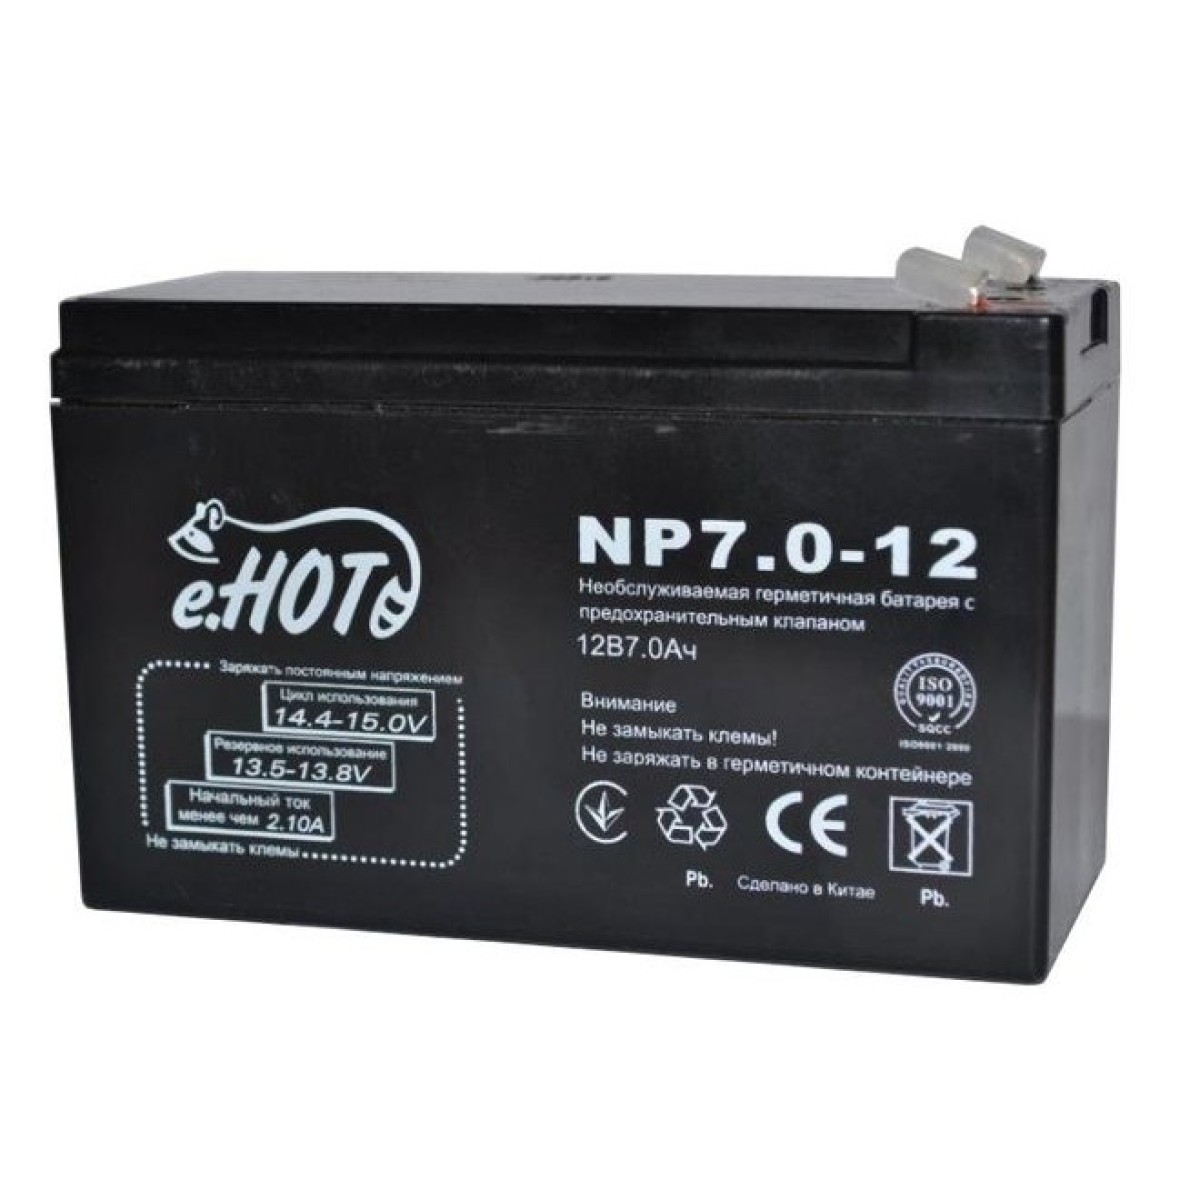 Акумуляторна батарея Enot NP7.0-12 12V 7Ah (EnotNP7.0-12) 256_256.jpg